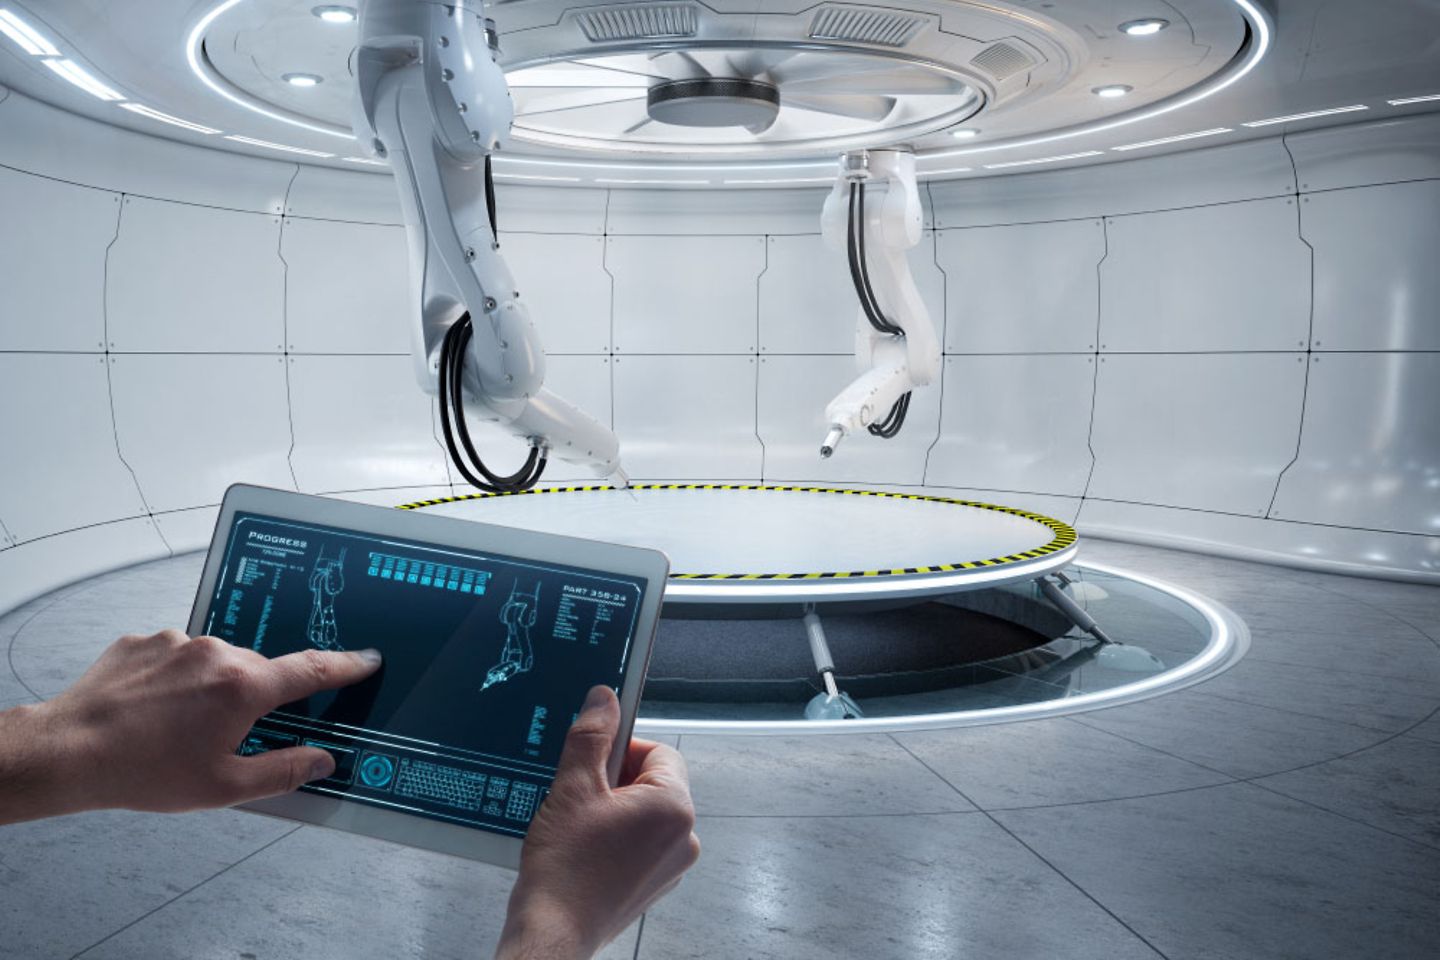 Planta de fabricación futurista con robots controlados con un tablet